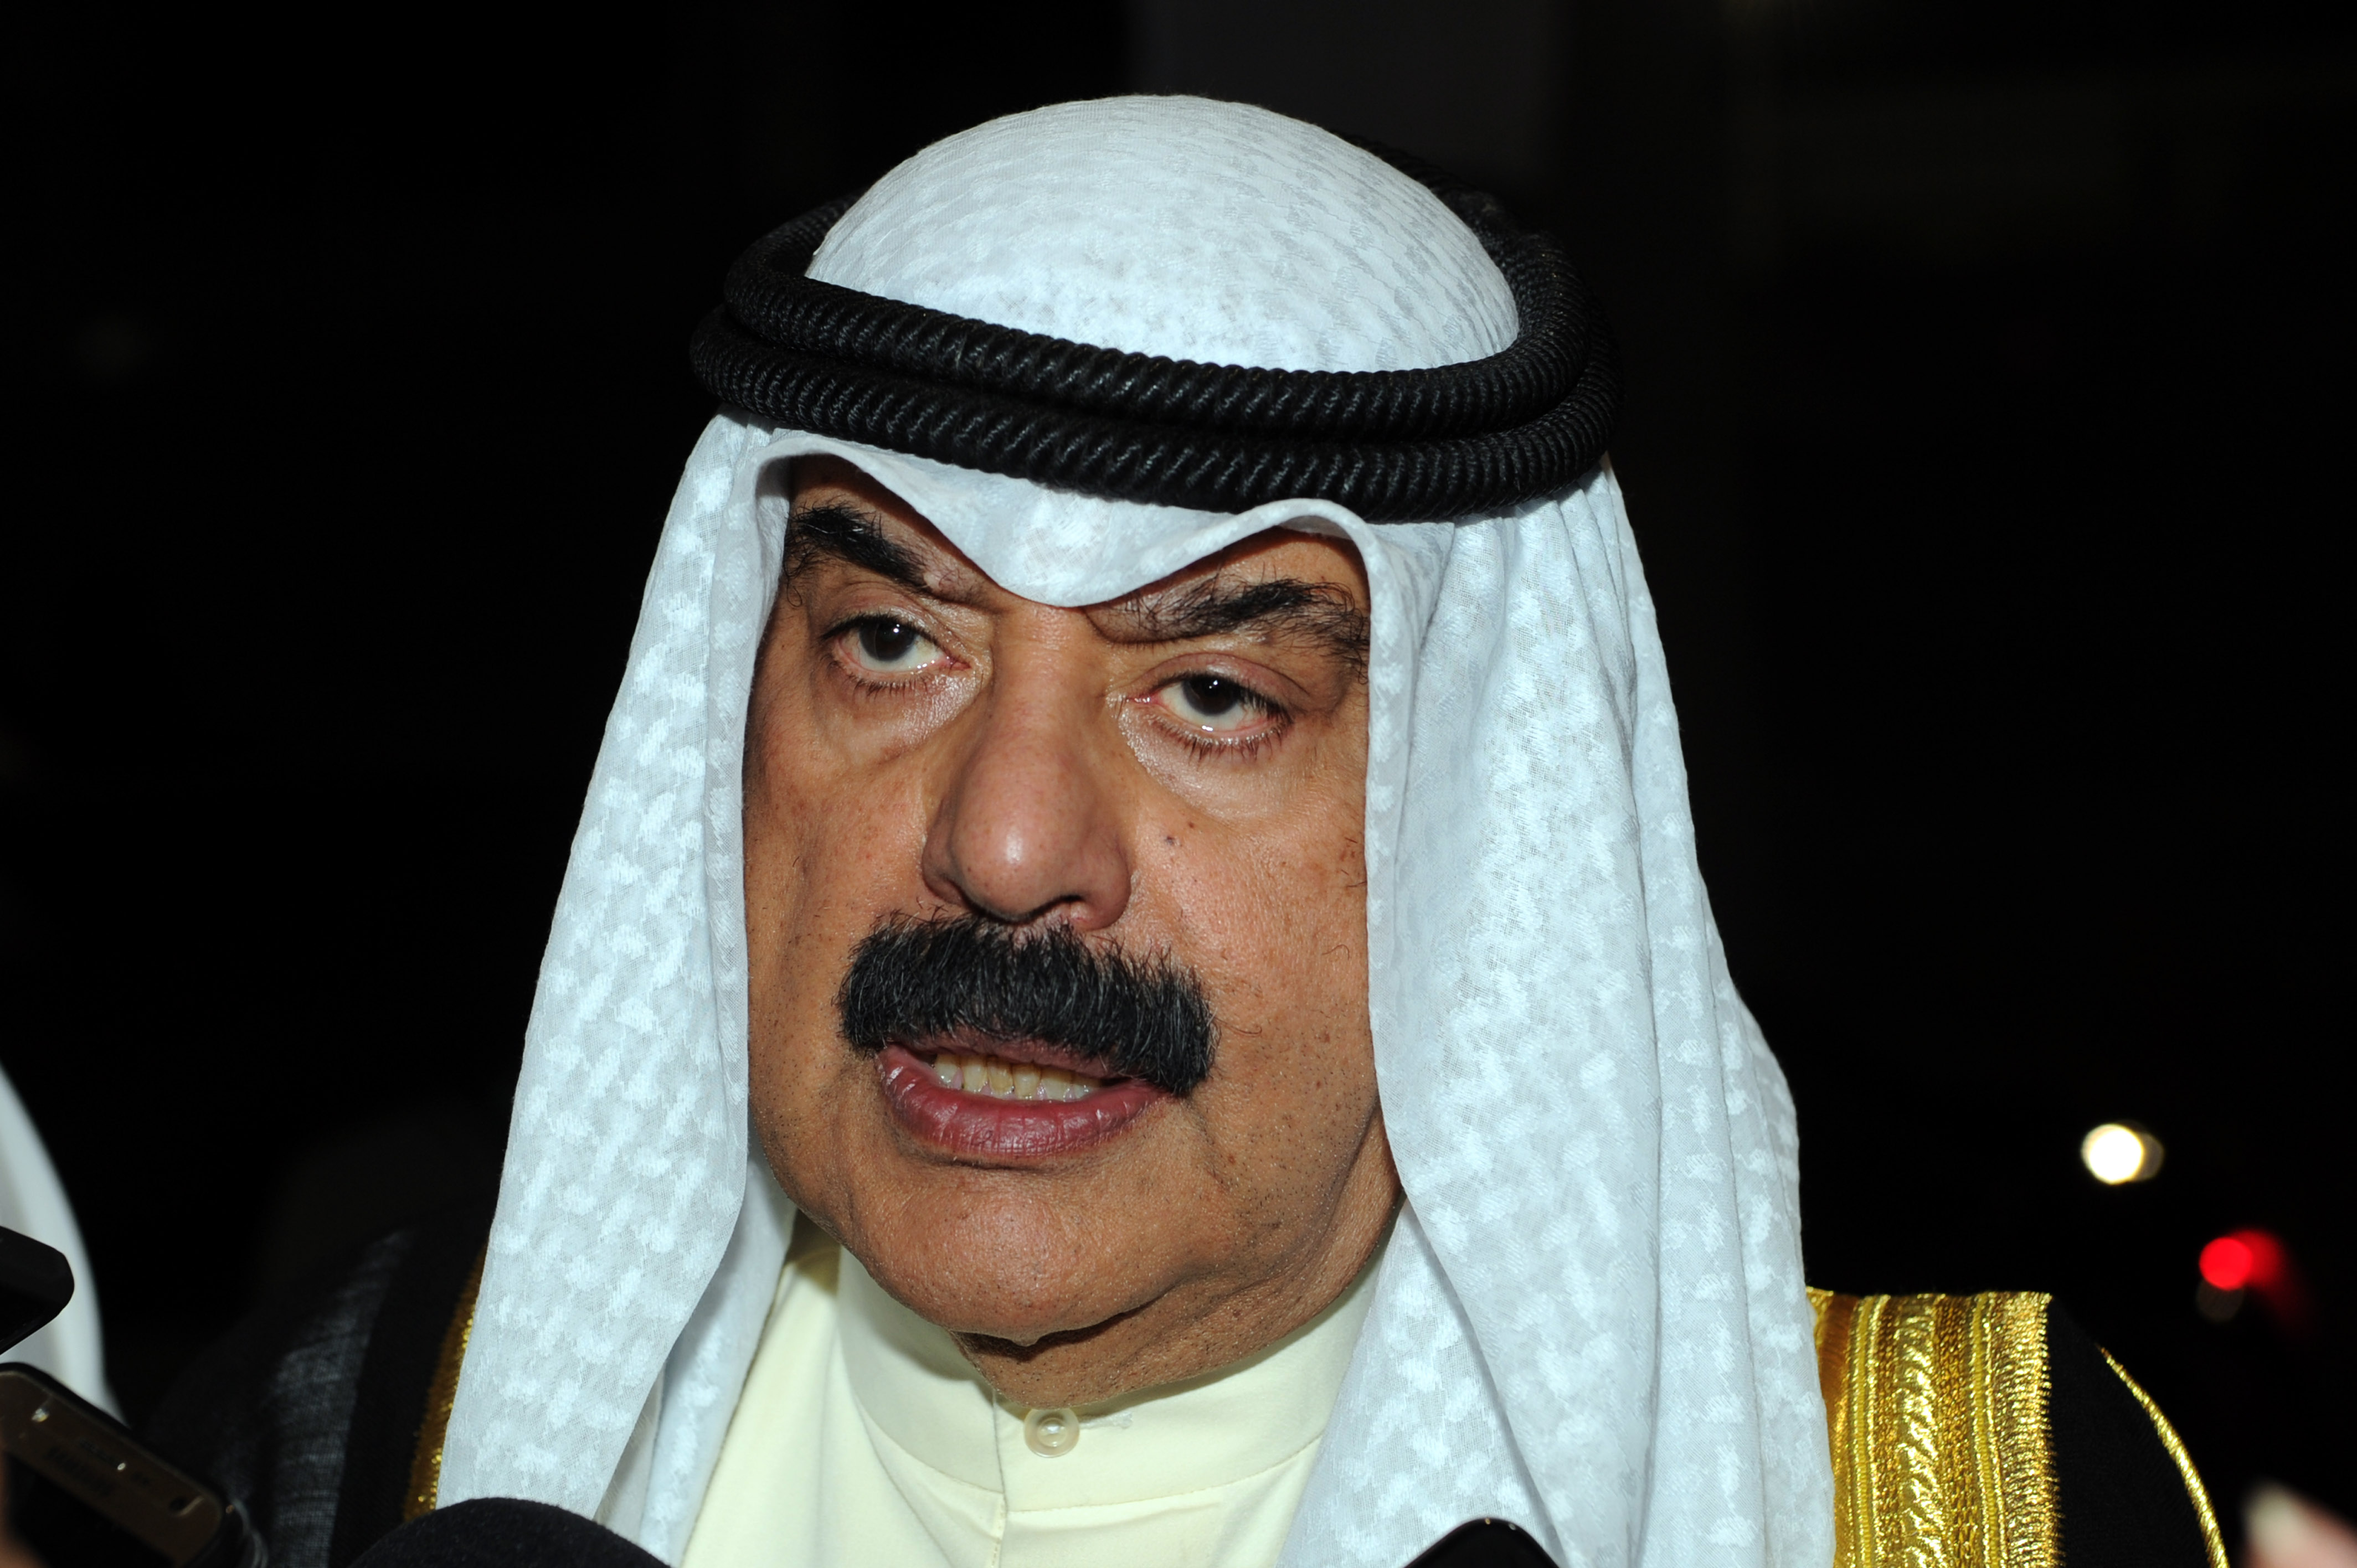 نائب وزير الخارجية خالد الجارالله